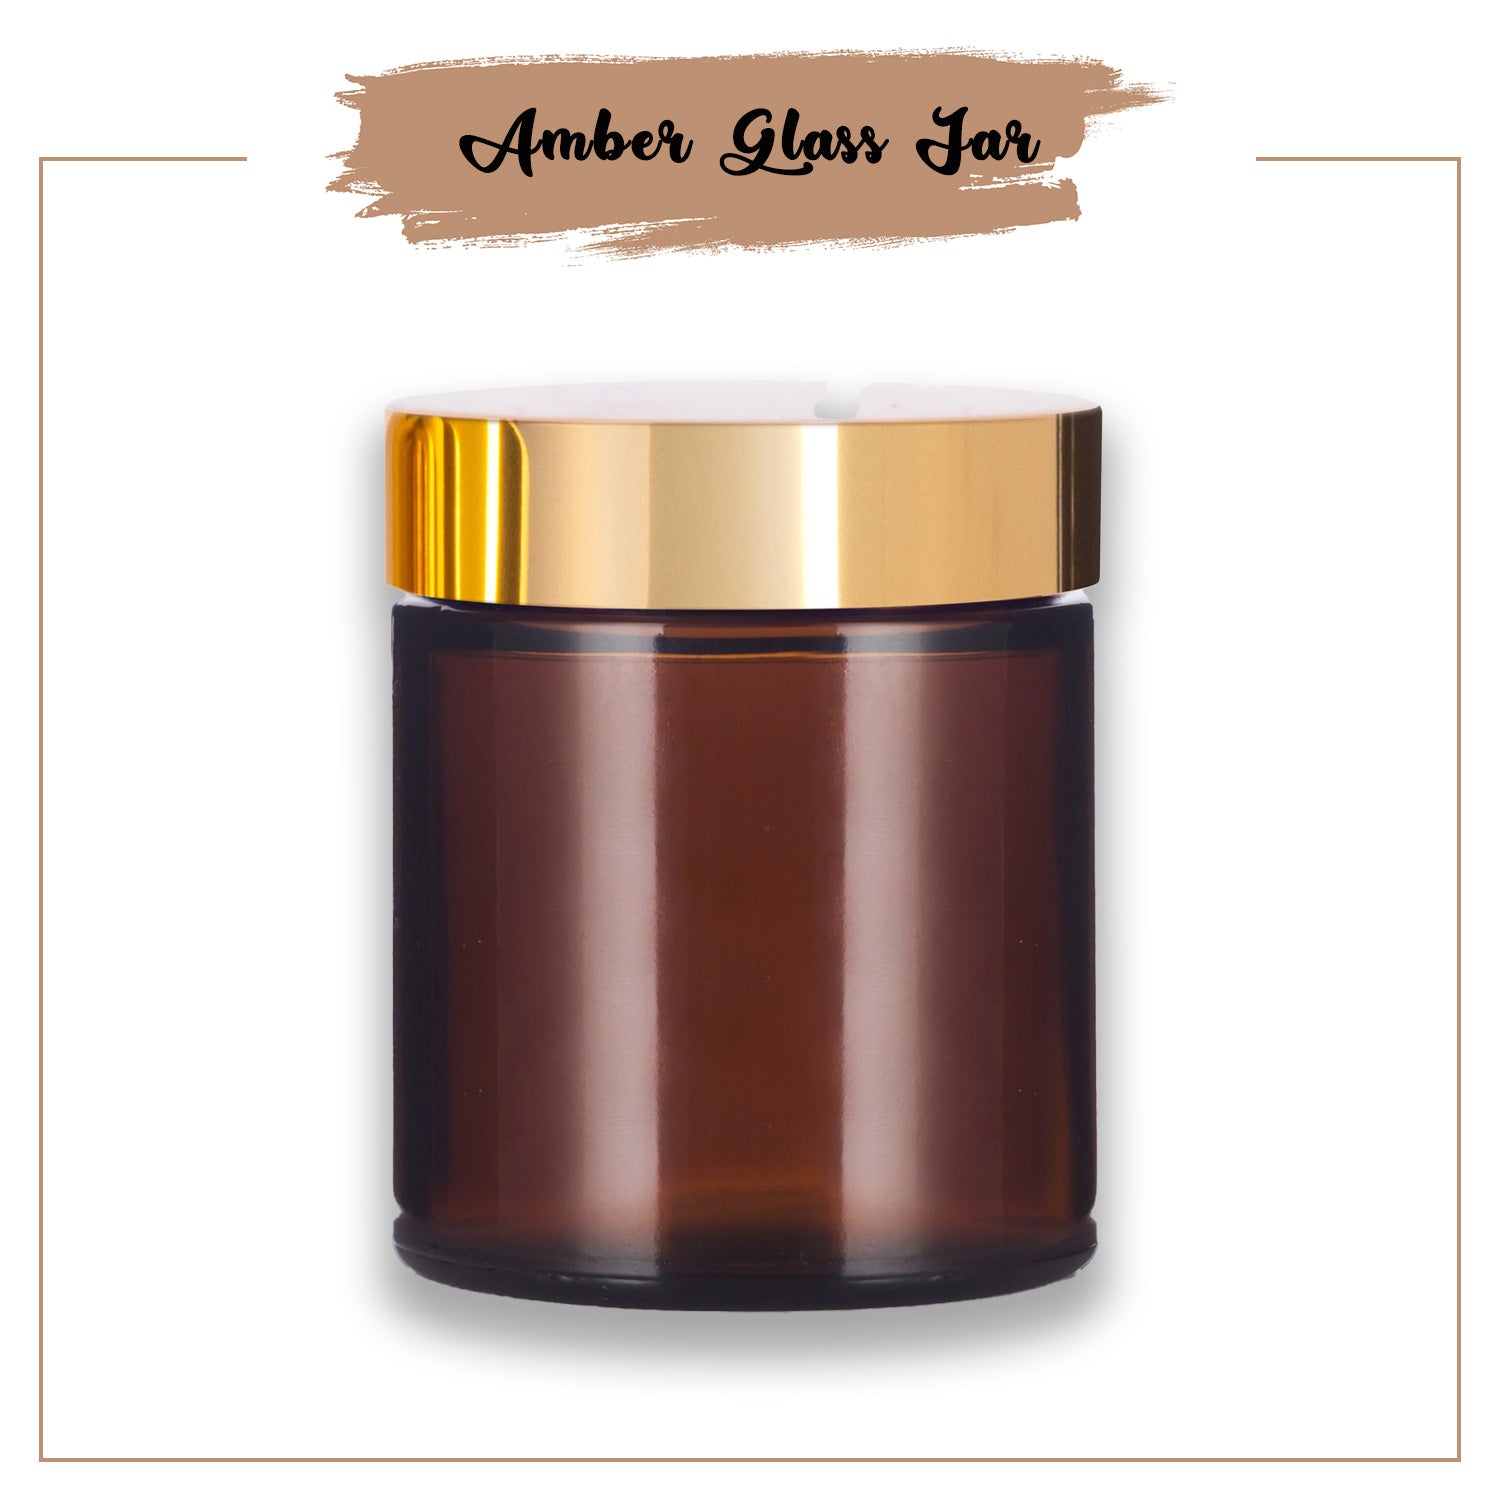 Amber Candle Jars with Golden Lid 100 Ml - Buy 1 Get 1 ( BOGO Offer)